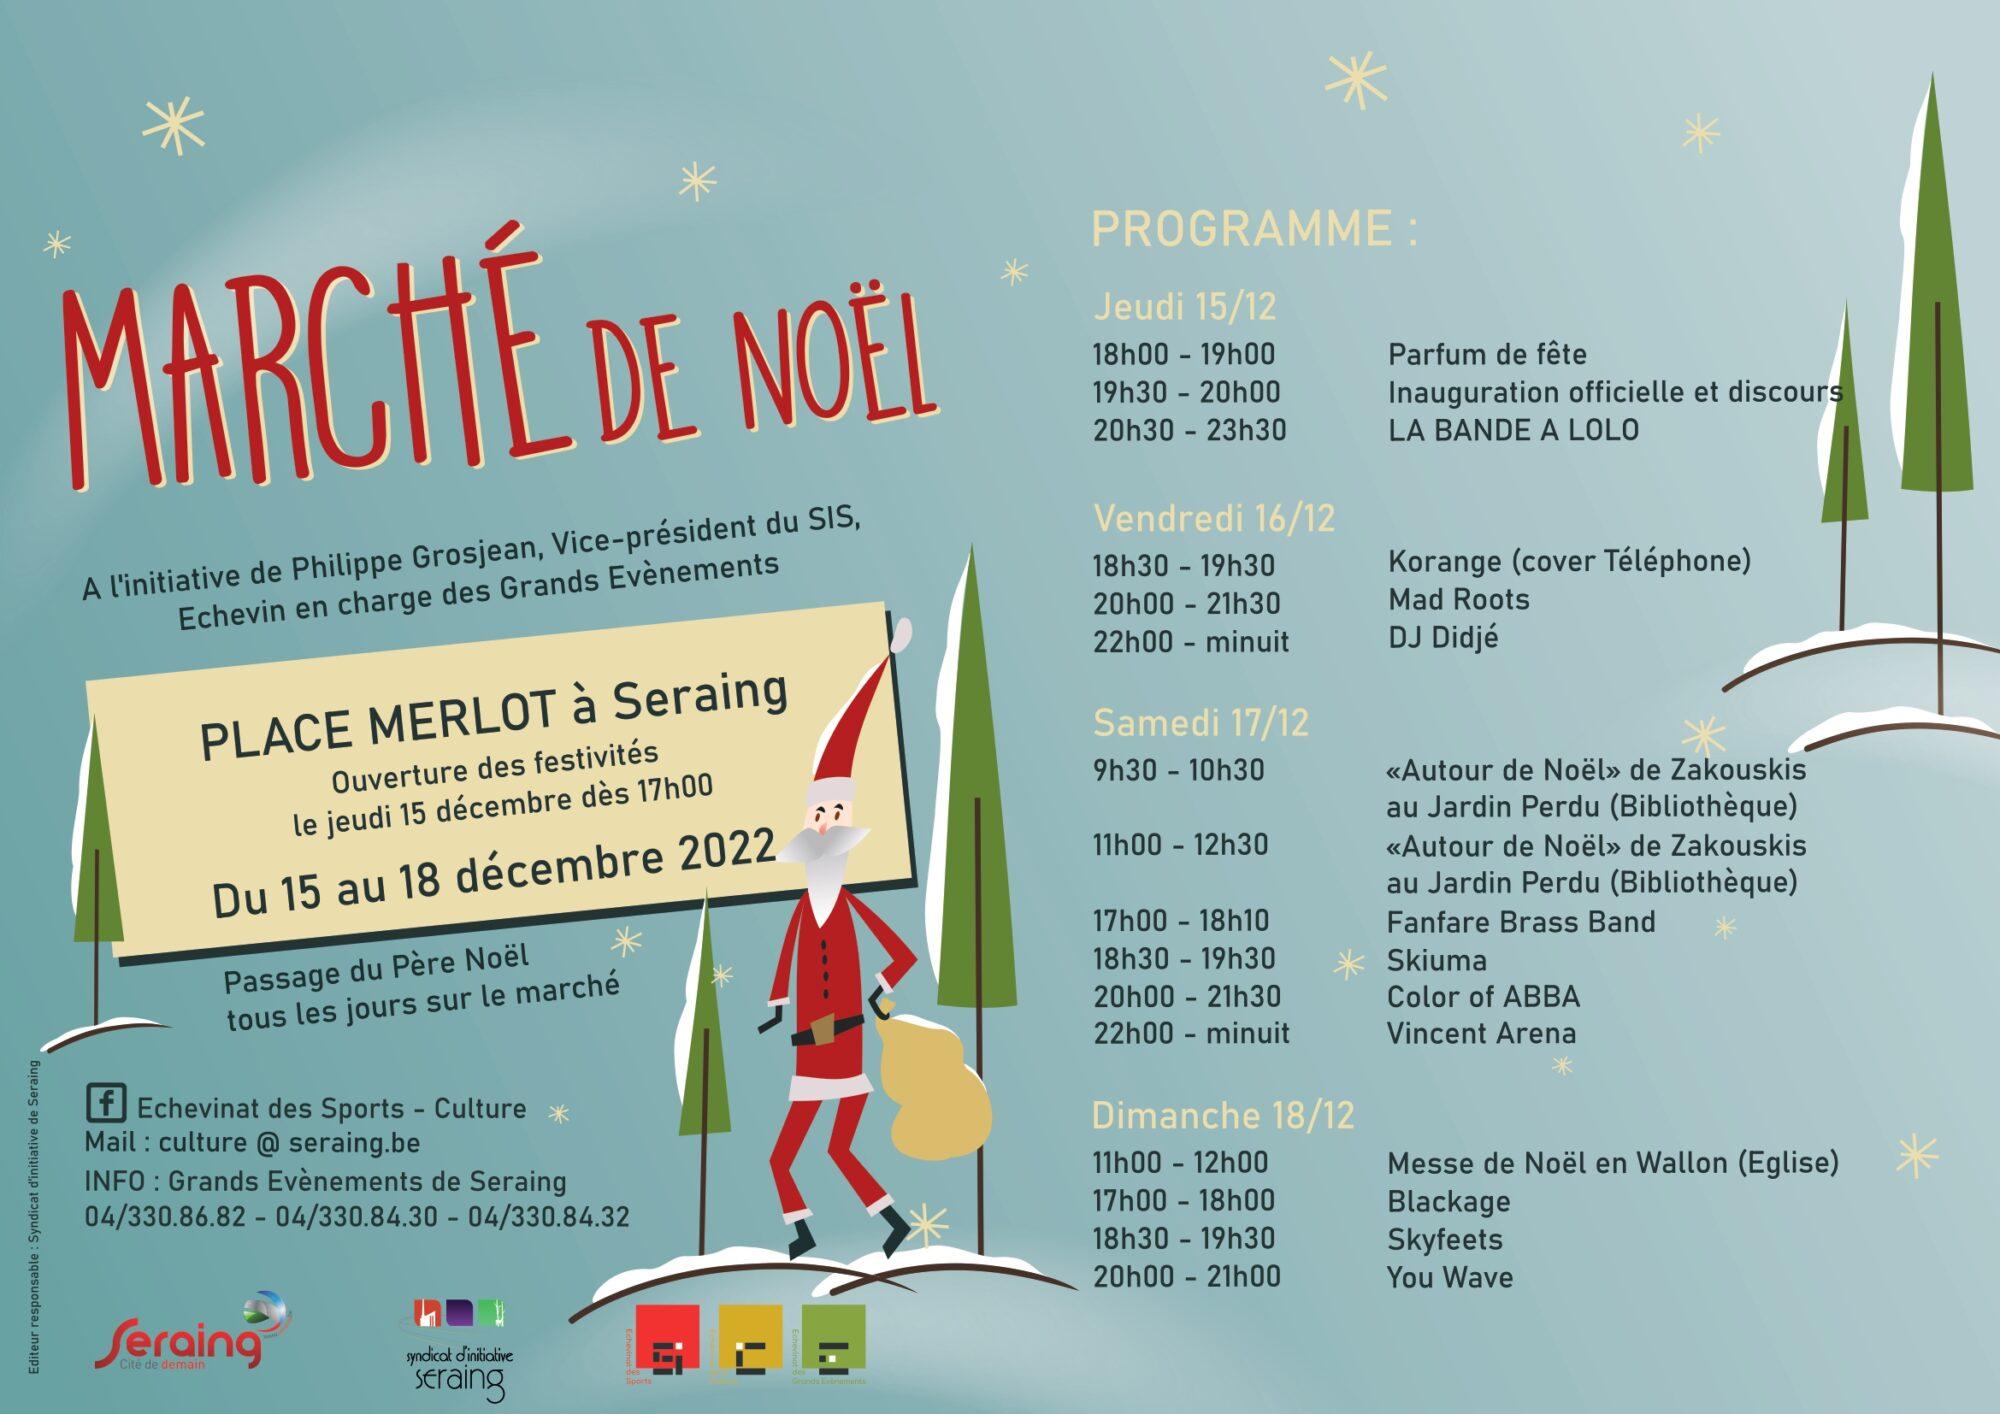 Le Marché de Noël de retour sur la place Merlot du 15 au 18 décembre